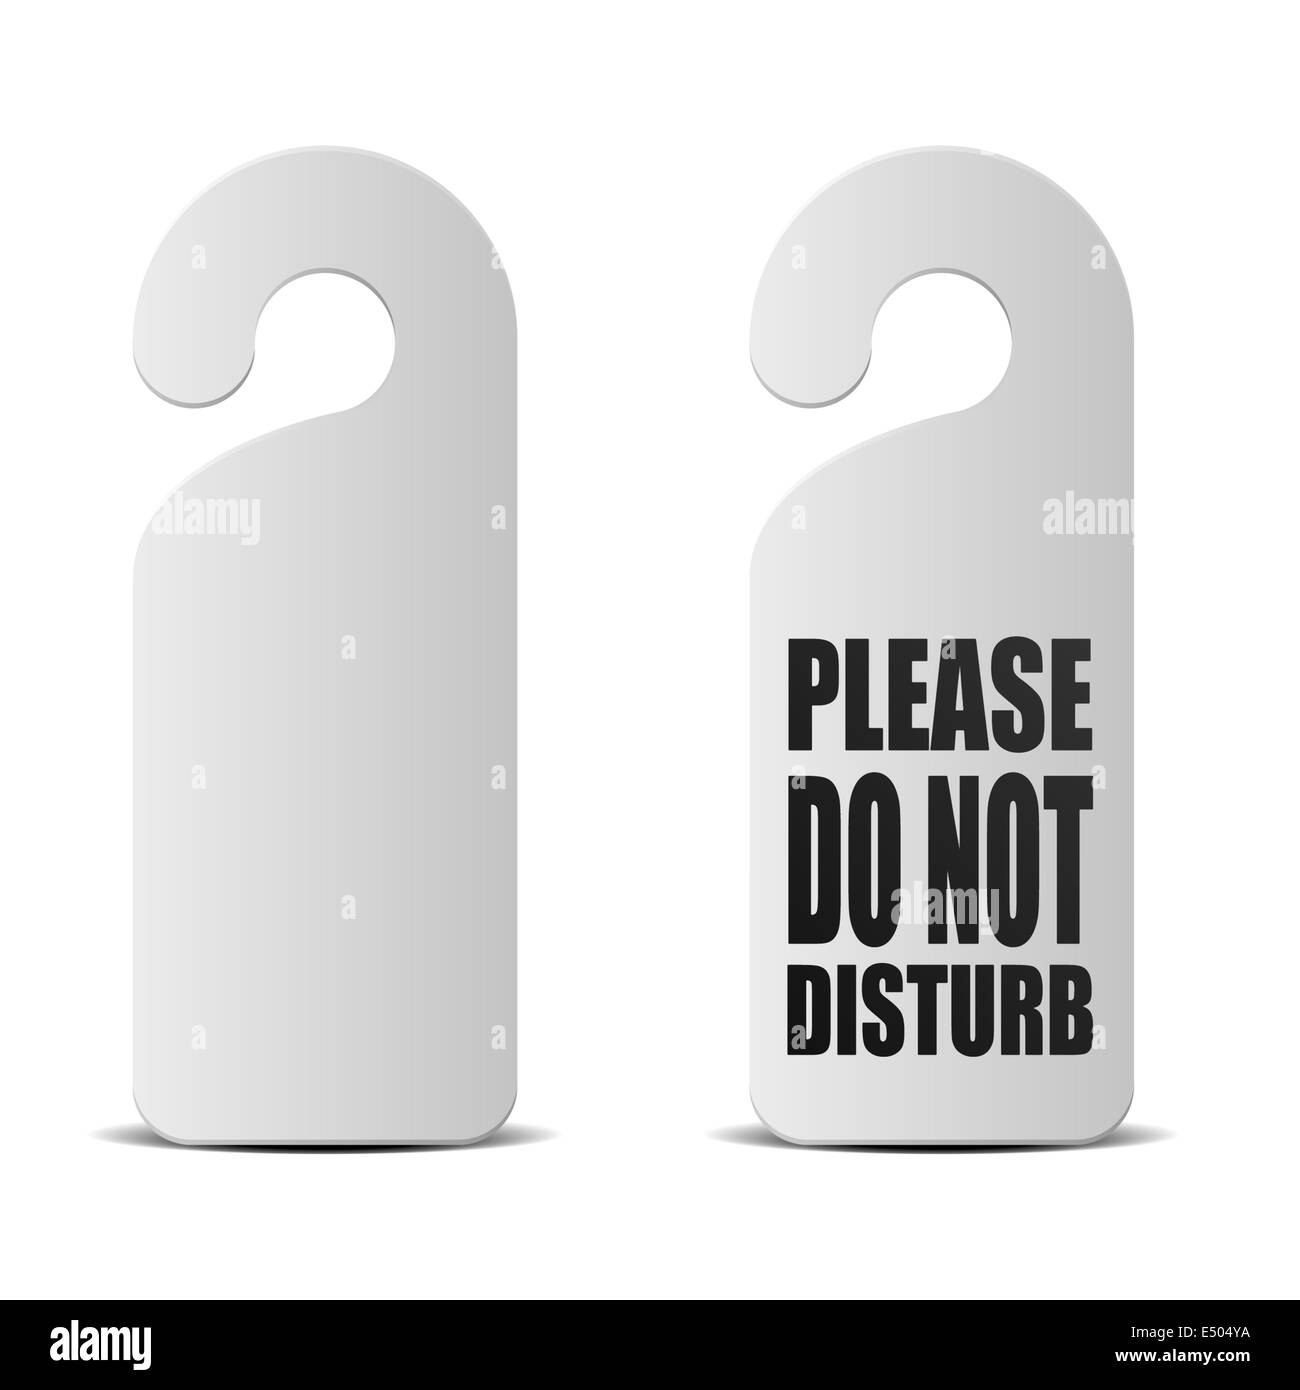 do not disturb door sign Stock Photo